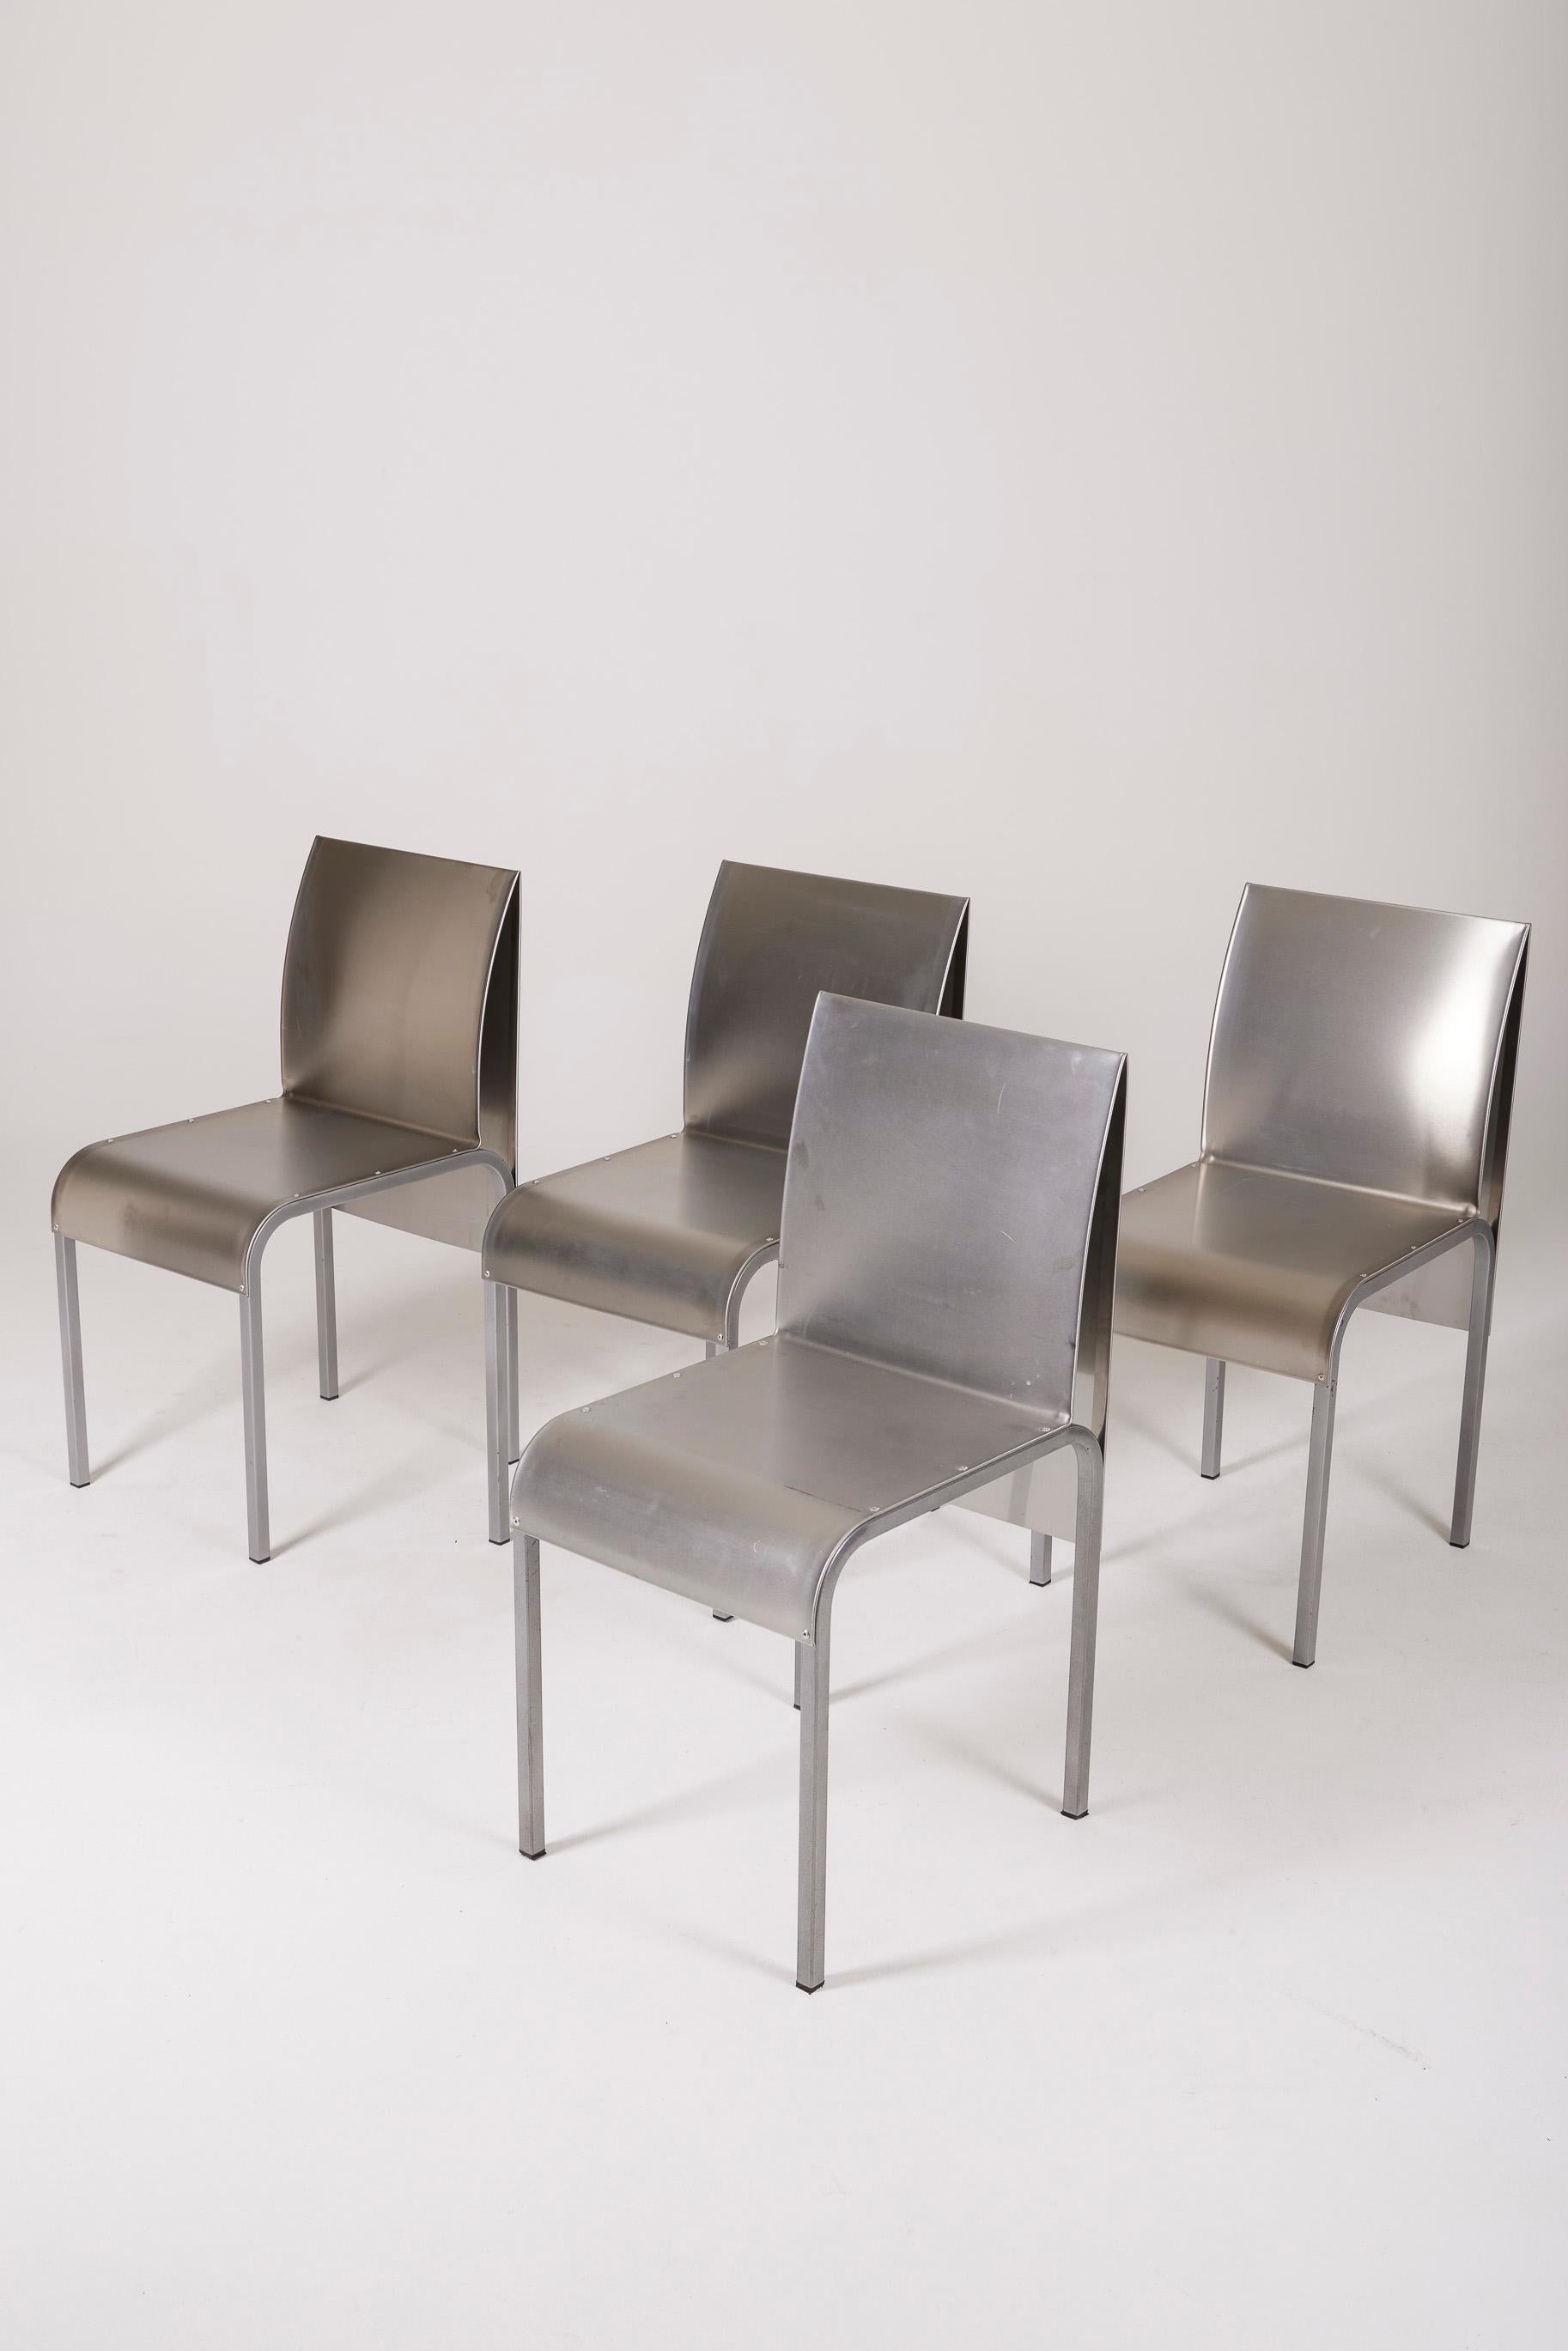 Ensemble de chaises de table de salle à manger en aluminium plié des années 90. Légers signes d'âge. Ces chaises complètent parfaitement le mobilier des années 70 et 80 de designers tels que Pierre Paulin, Afra et Tobia Scarpa, Michel Ducaroy,